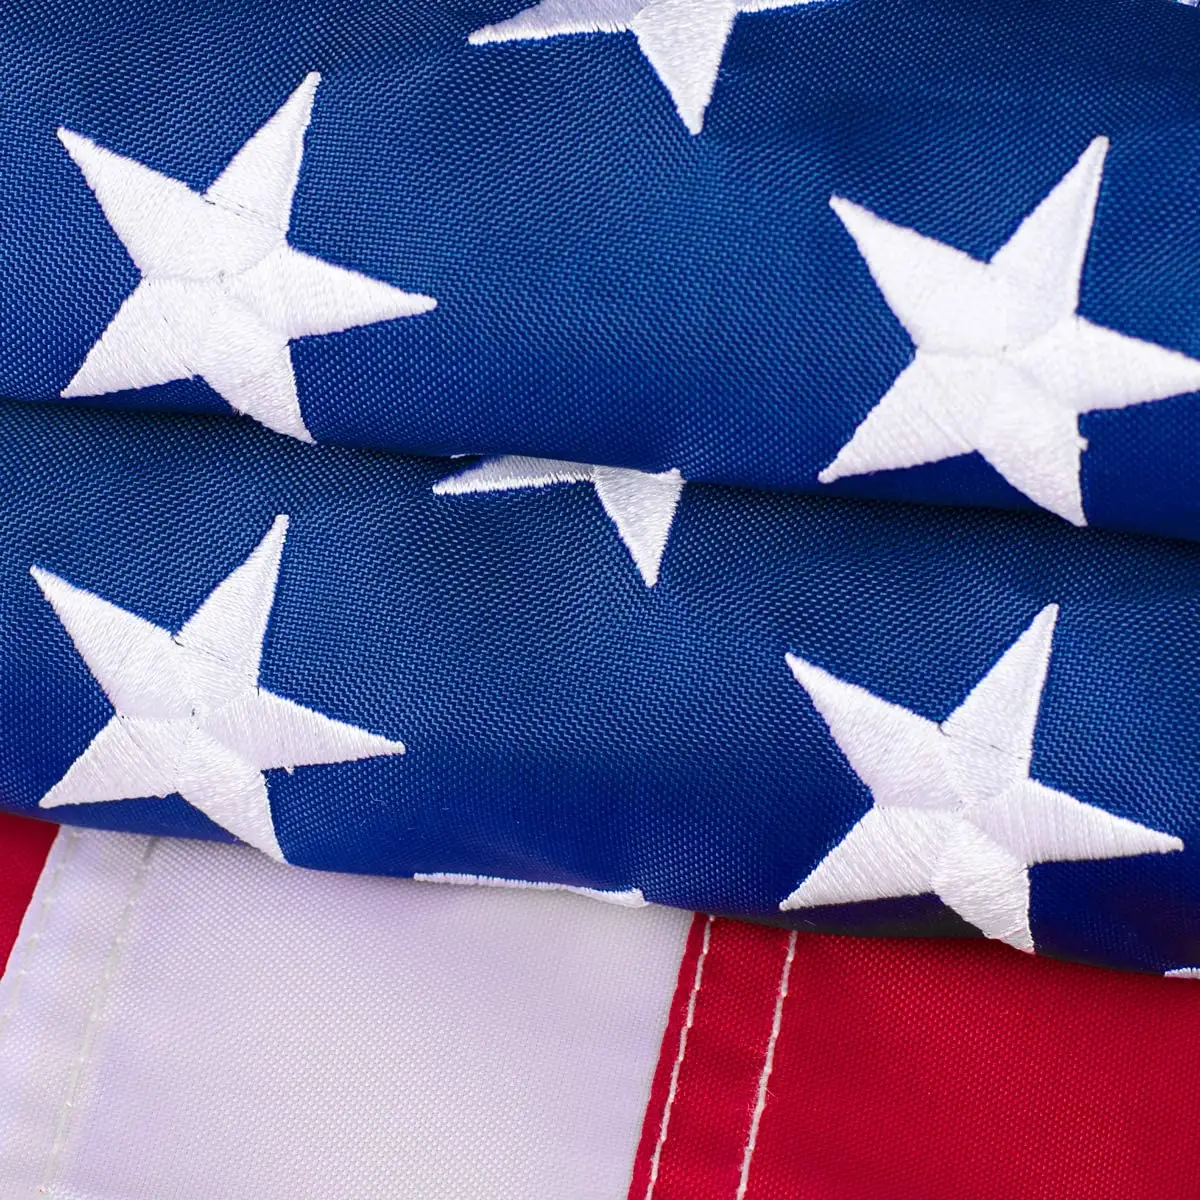 Amerikanische Flaggen 3x5 für außerhalb der USA US Flag Deluxe Bestickte Sterne Duty Durable Flags Lebendige Farbe genähte Streifen Messing Ösen